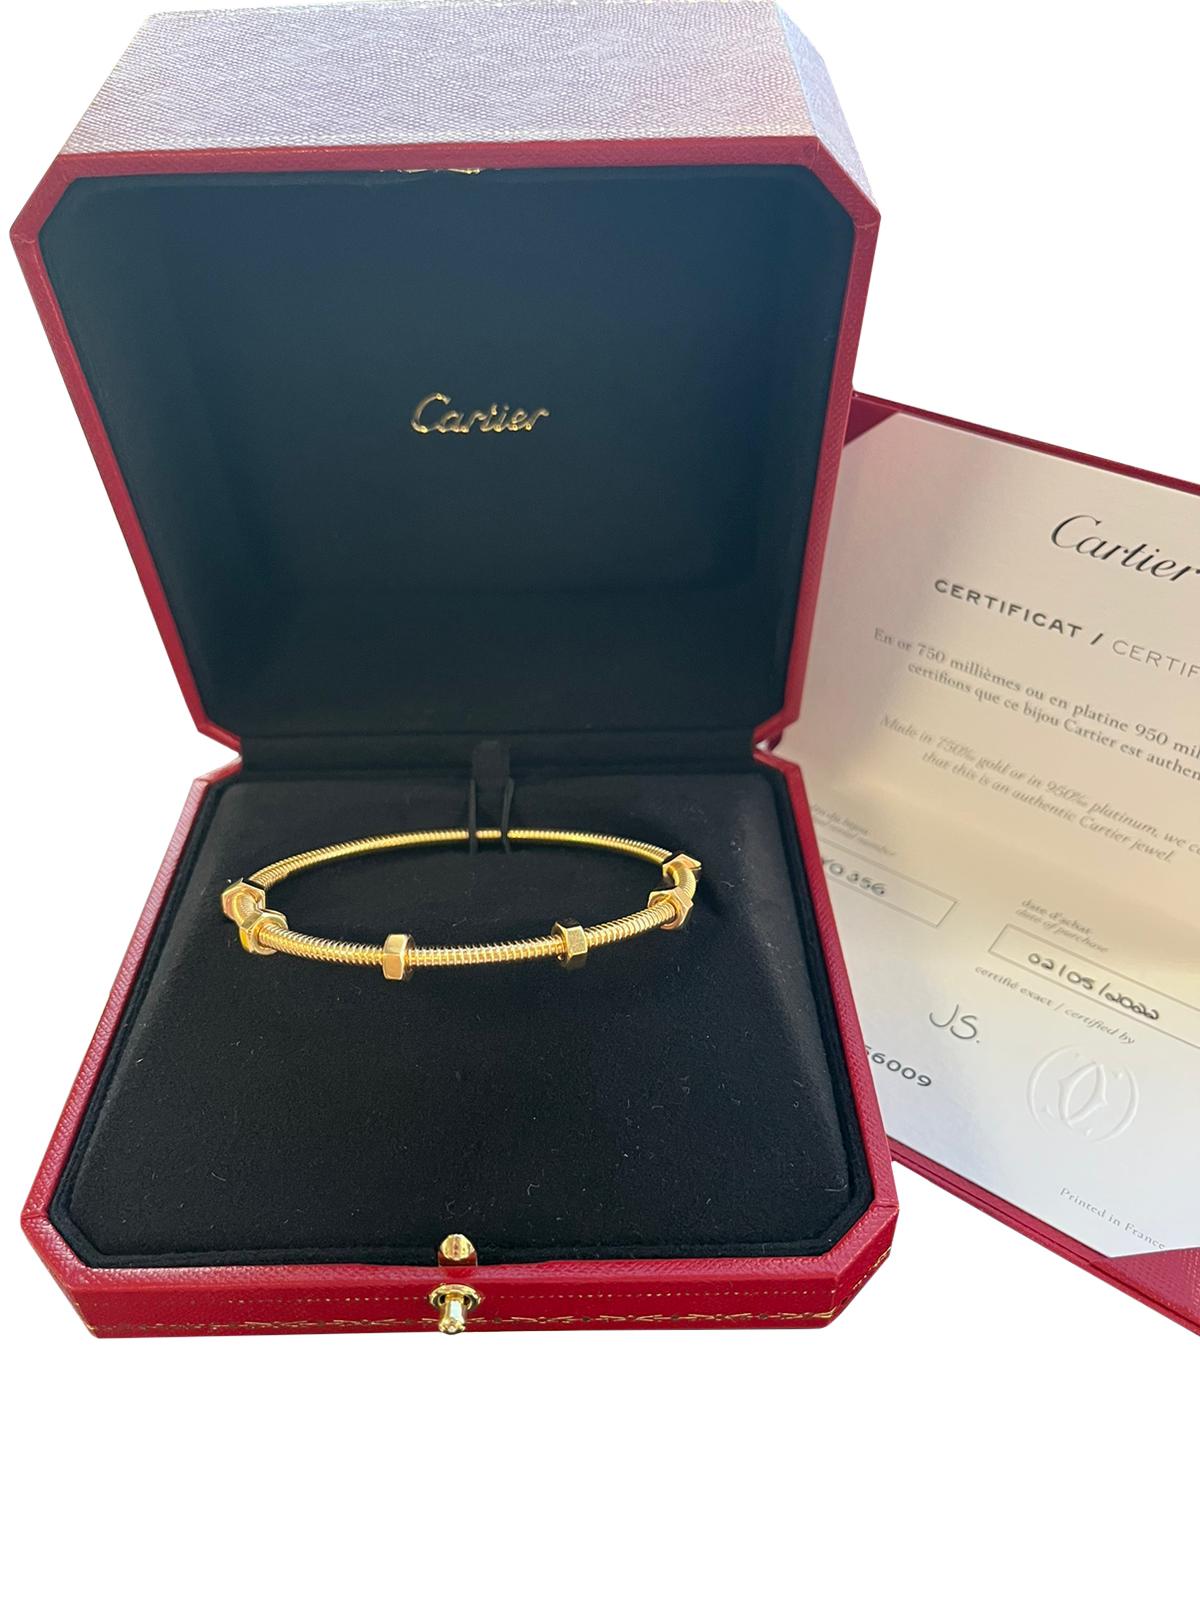 Cartier Ecrou De Cartier 18K Yellow Gold Size 20 Bangle Bracelet For Sale 1